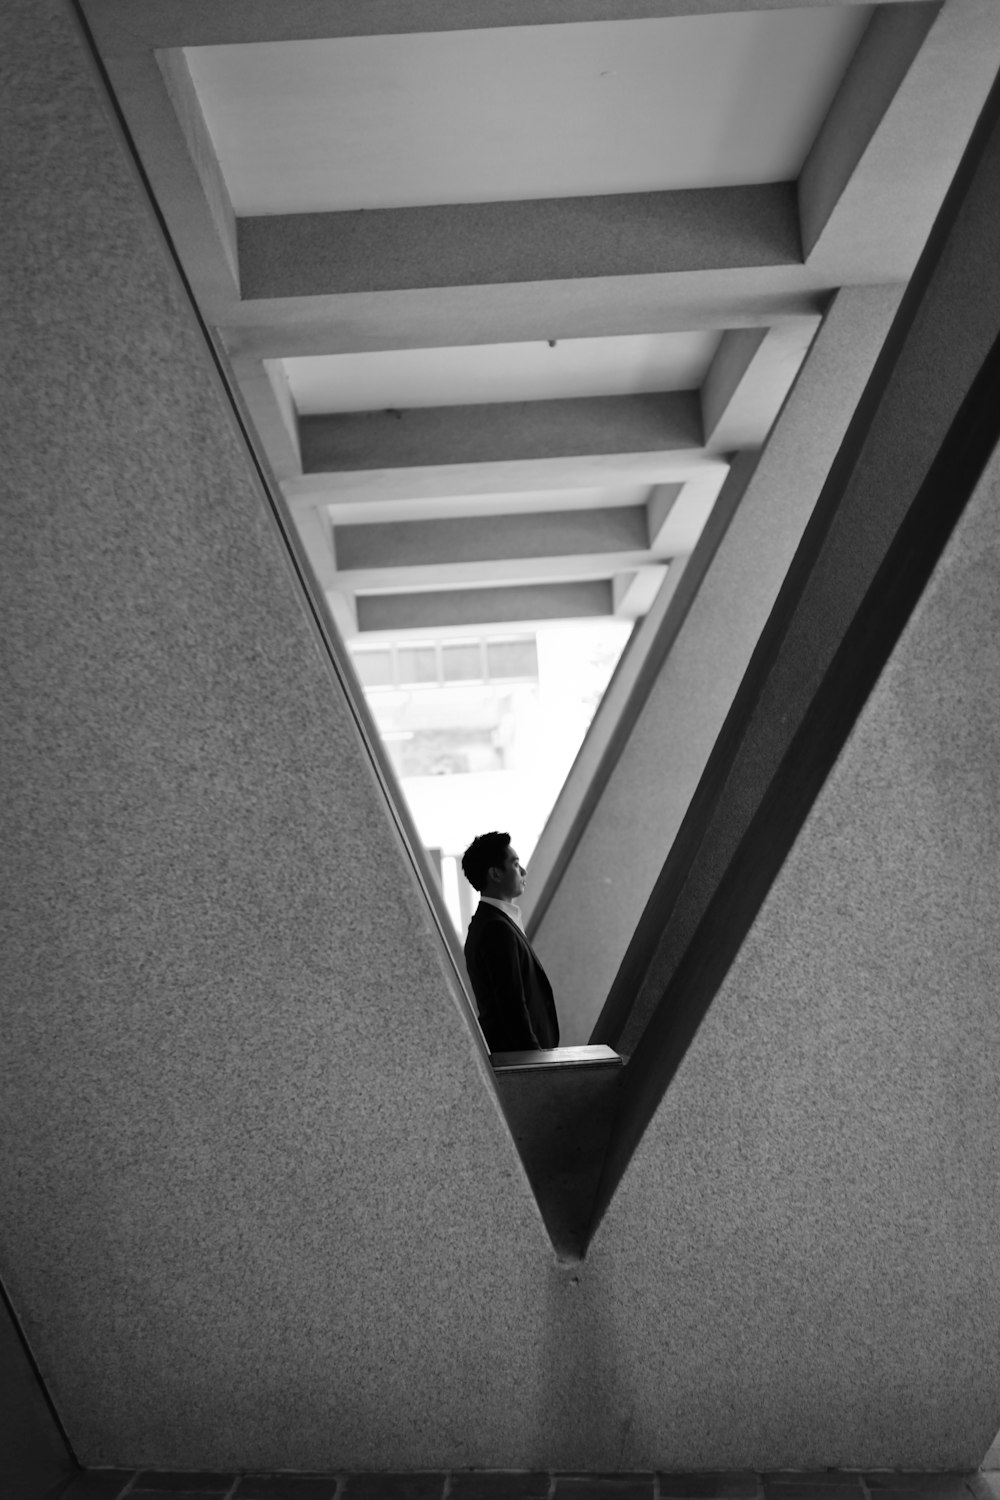 Photographie en niveaux de gris d’un homme debout près d’un bâtiment